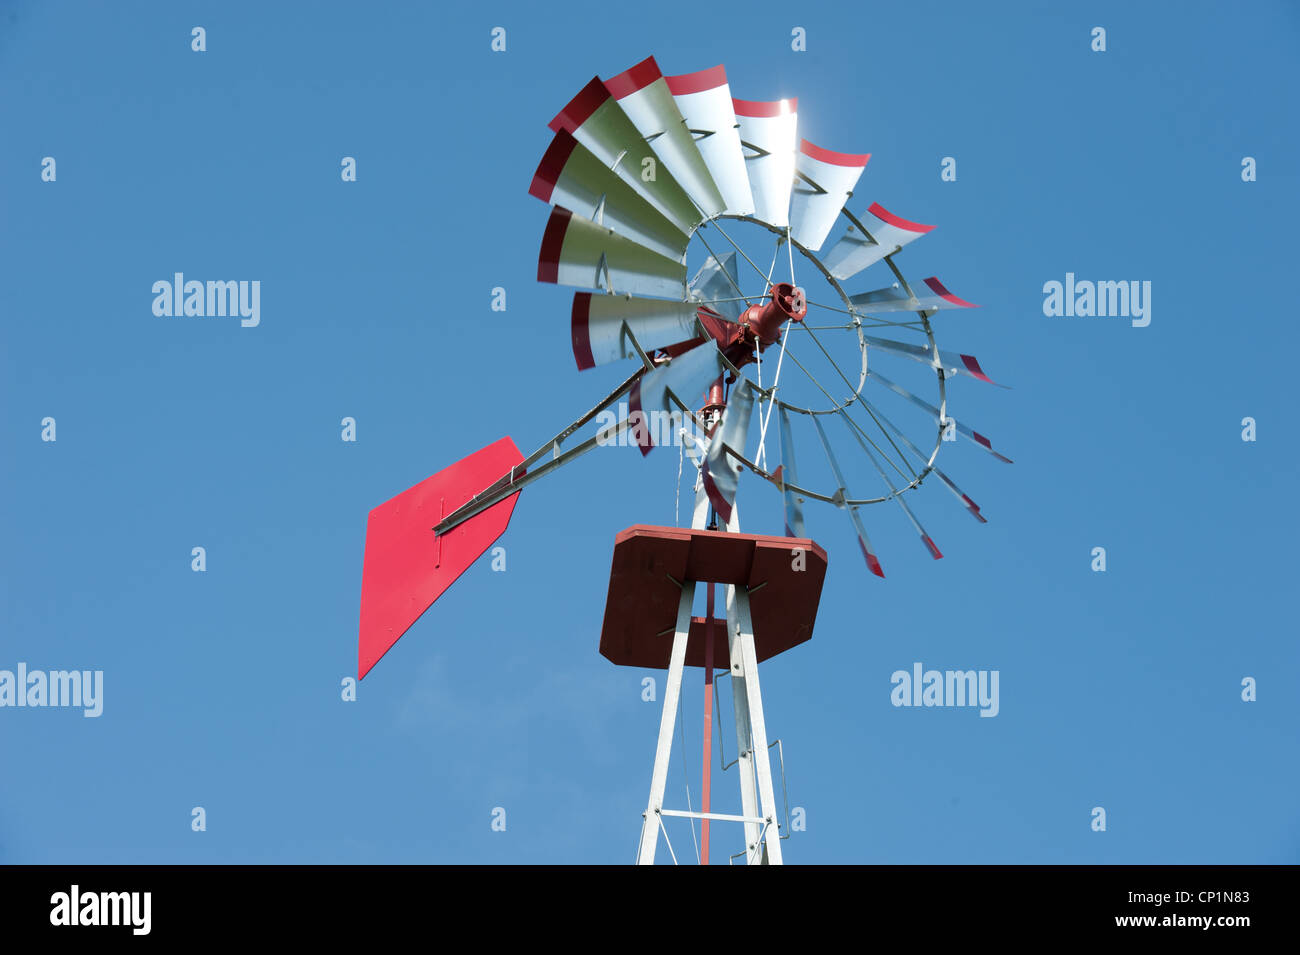 Mulino a vento sulla fattoria nella parte anteriore della soleggiata cielo blu Foto Stock